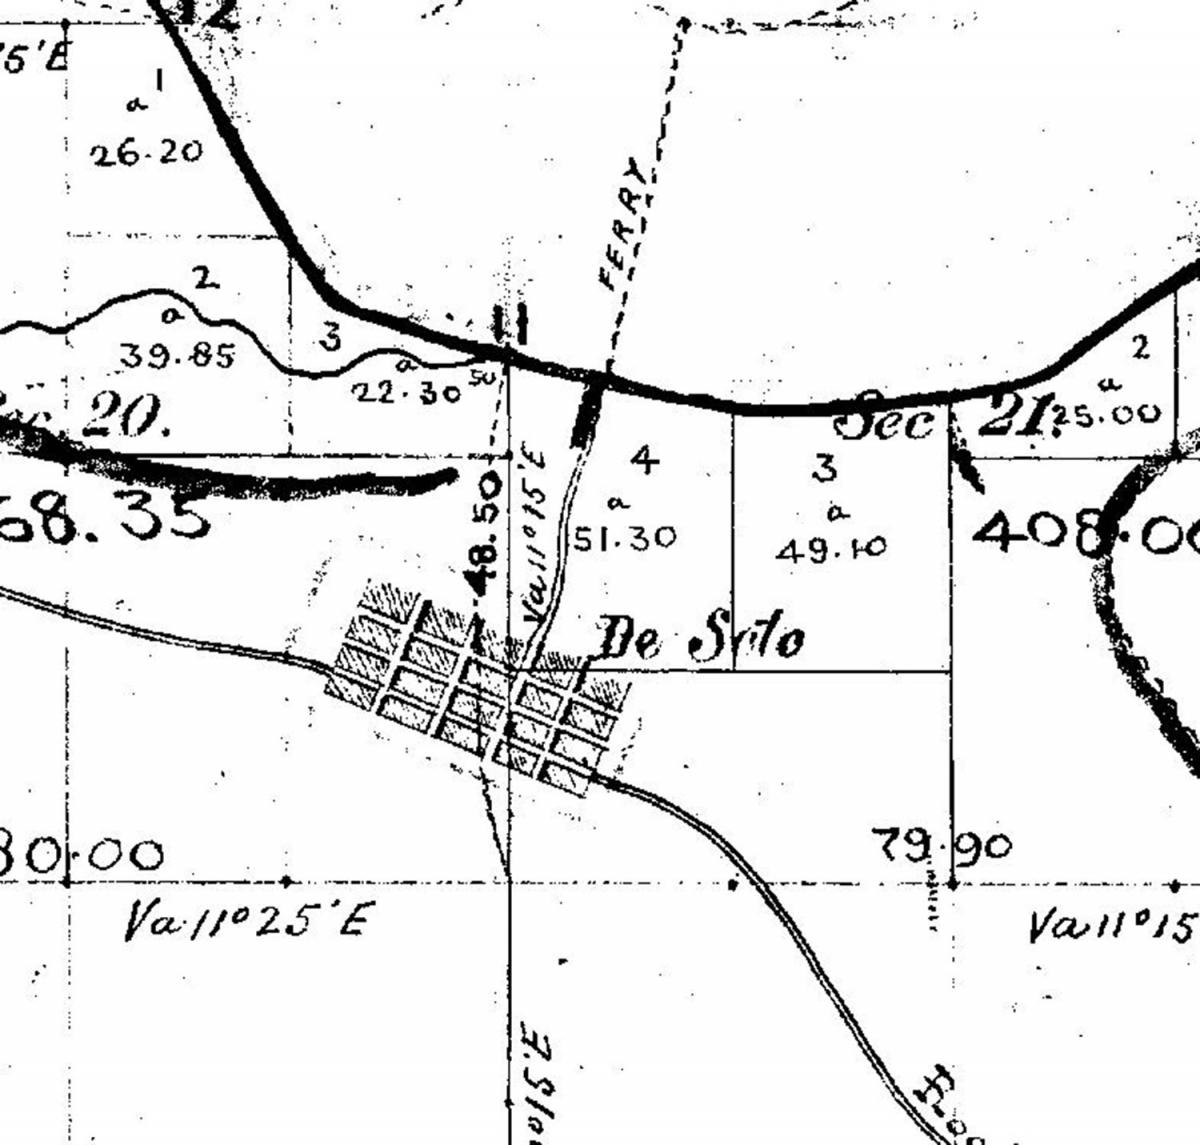 1856 GLO Survey plat map depicting the town of De Soto